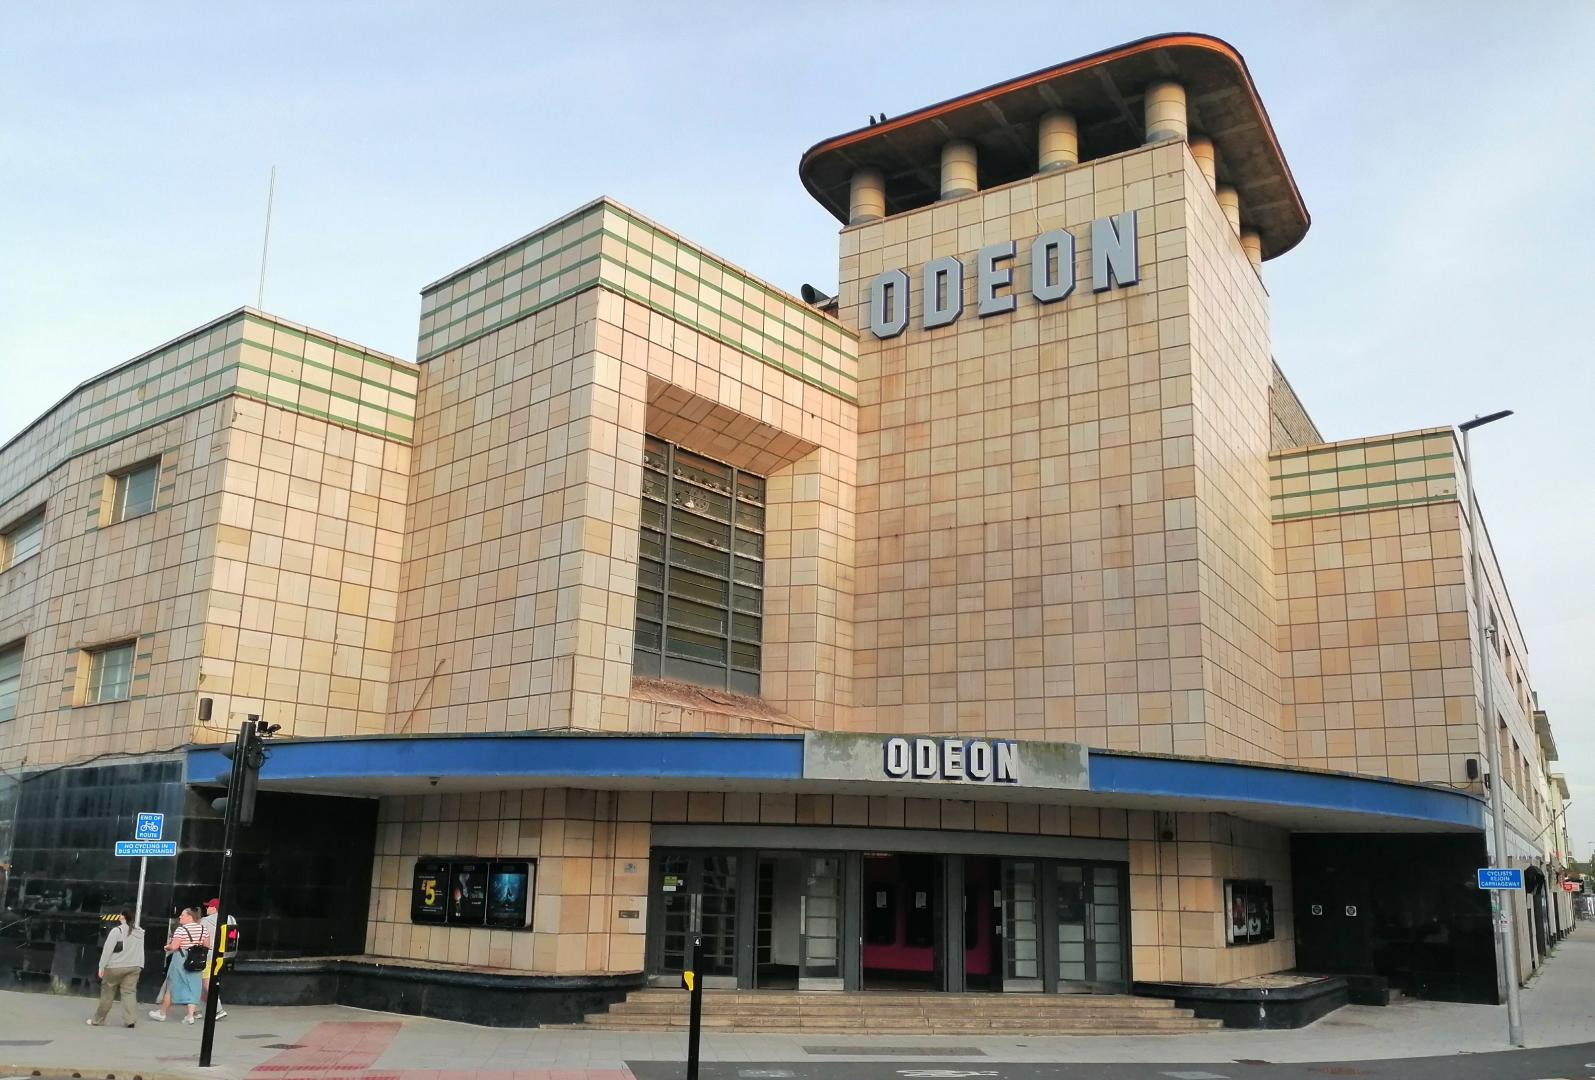 A photo of the Odeon cinema in Weston-super-Mare